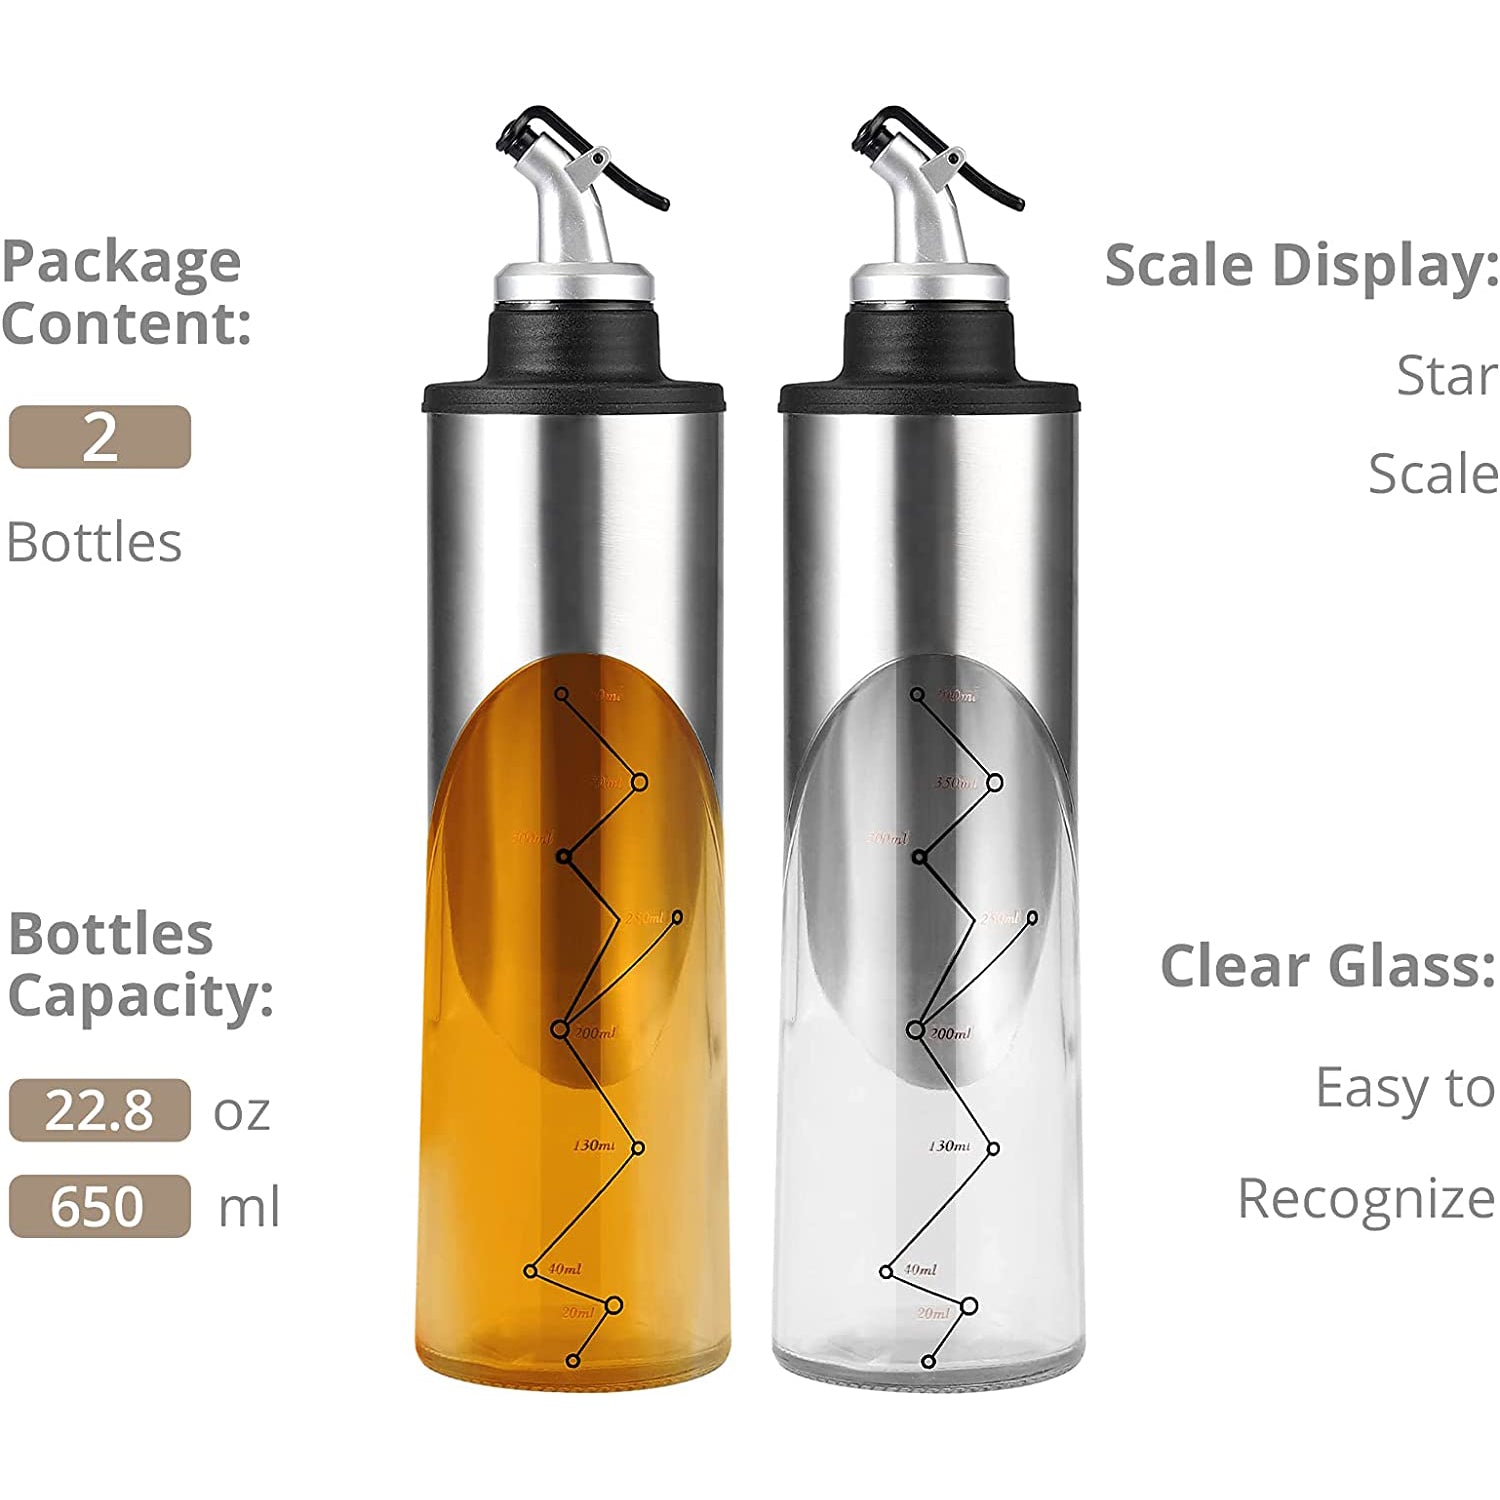 HOMGEN Popular 2Pcs 650ml Stainless Steel&Glass Oil Bottle